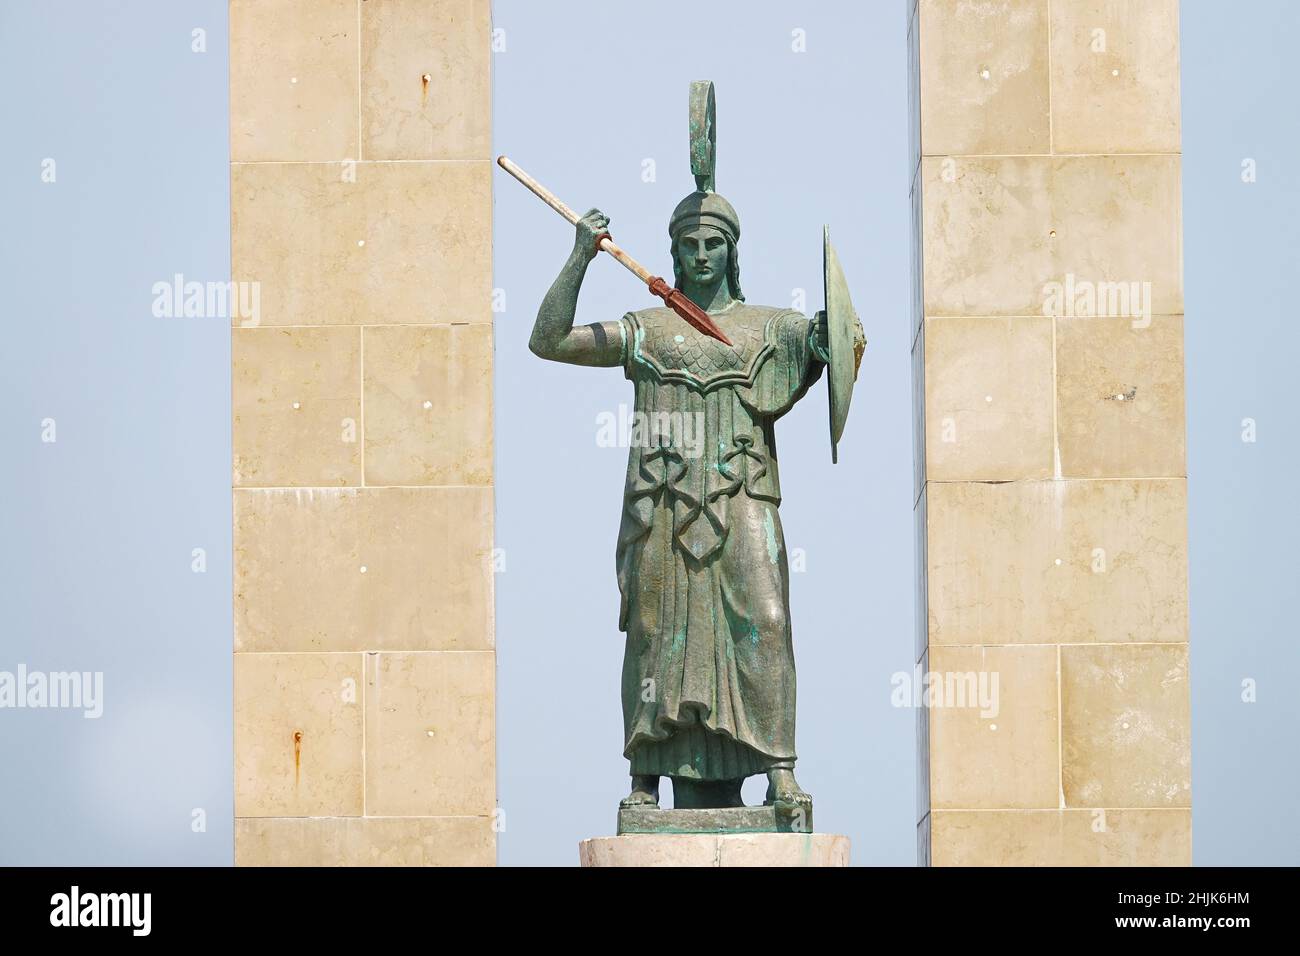 Athena goddess Statue and Monument to Vittorio Emanuele at Arena dello Stretto in Reggio Calabria, Italy. Reggio Calabria, Italy - July, 2021 Stock Photo